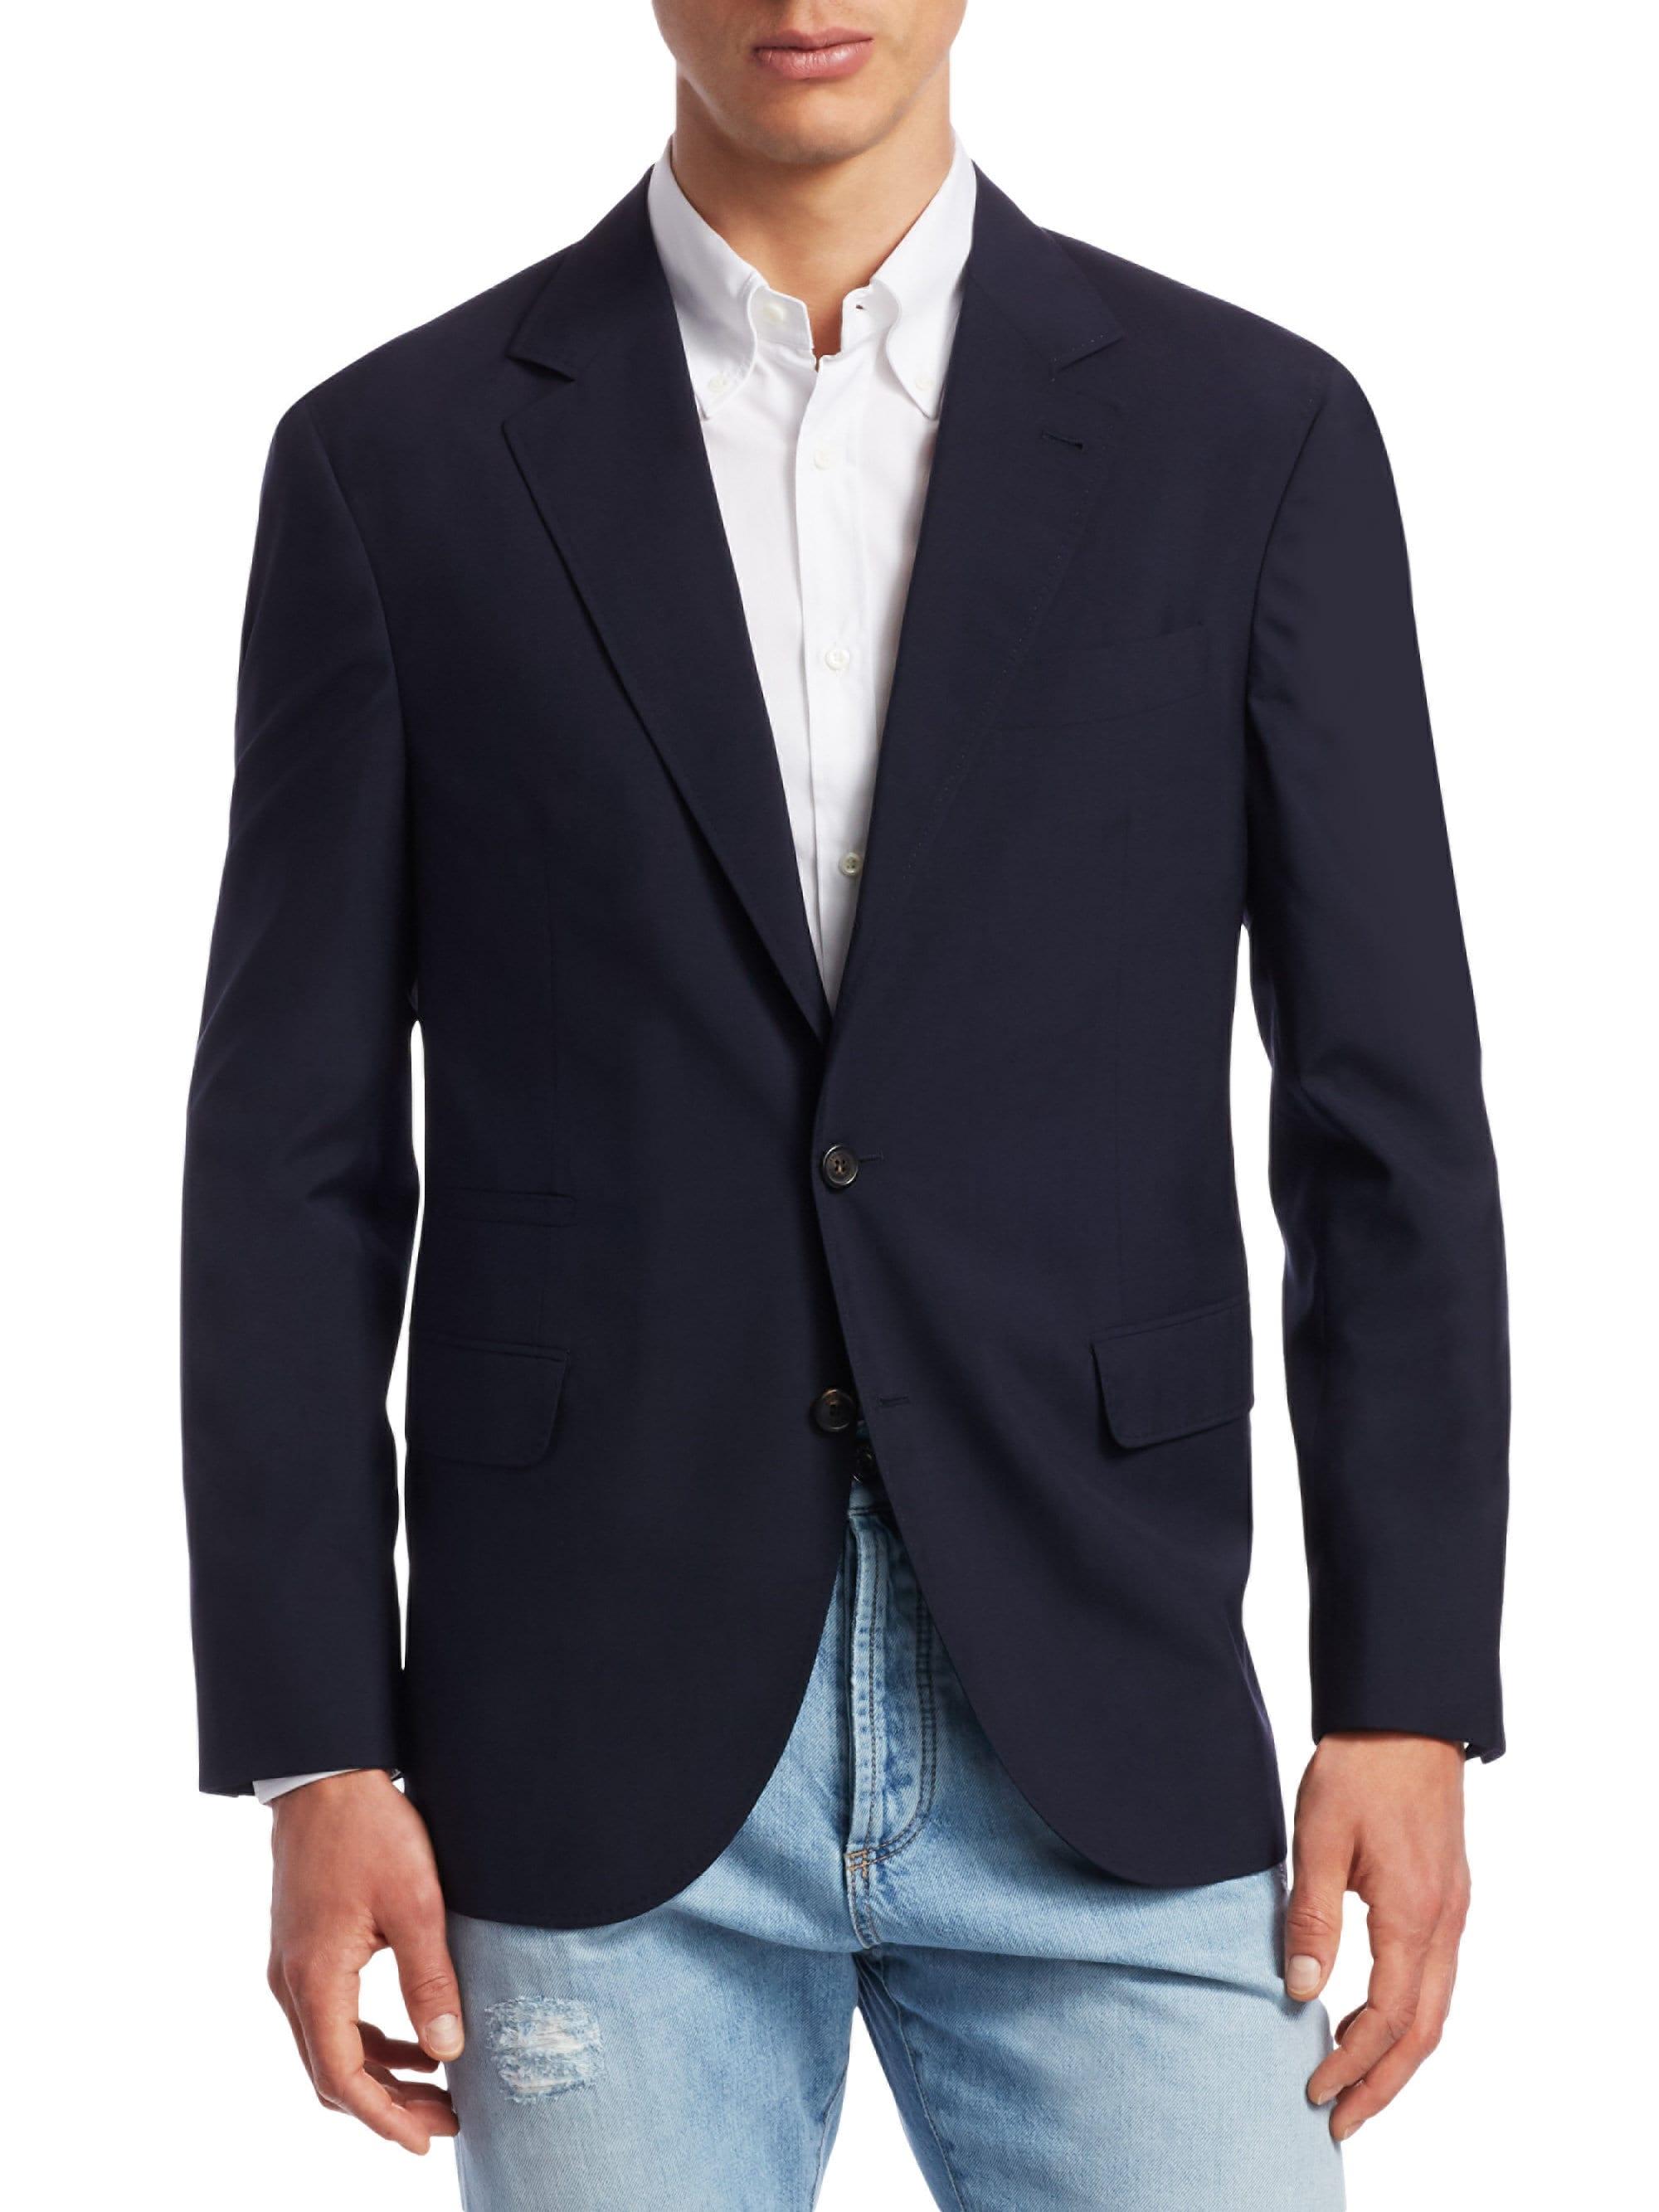 Brunello Cucinelli Wool & Silk Travel Blazer in Blue for Men - Lyst